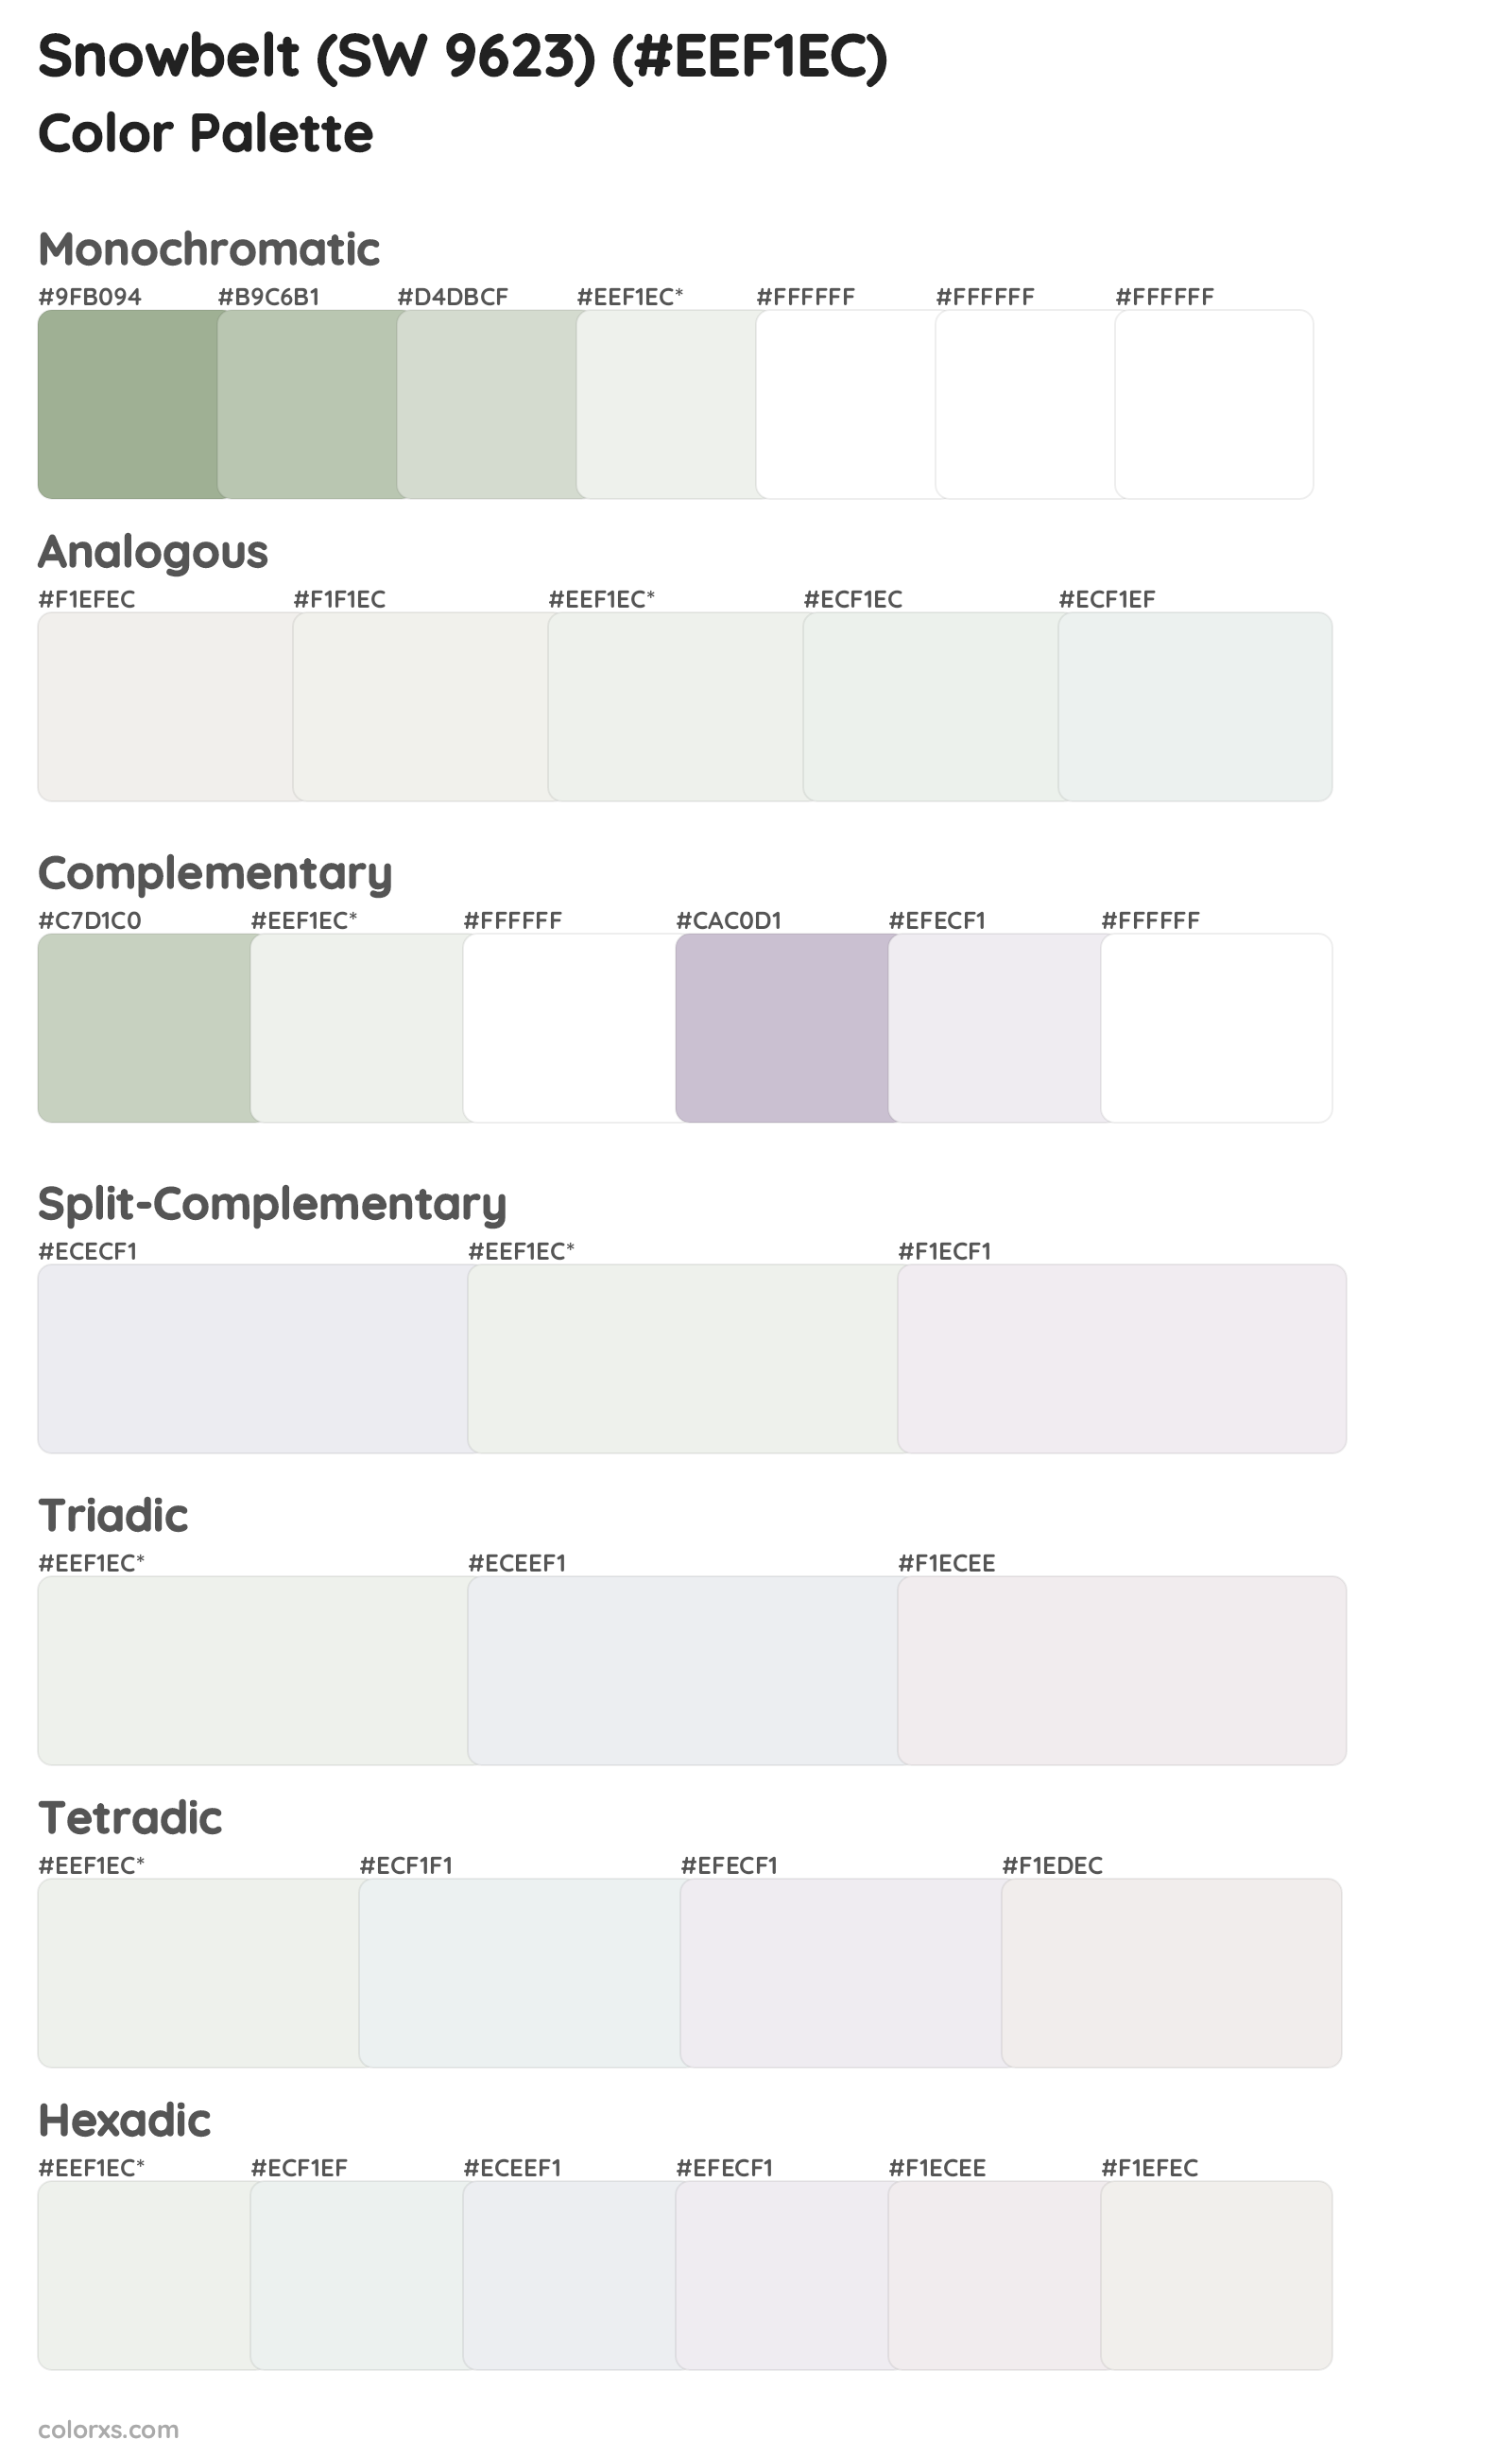 Snowbelt (SW 9623) Color Scheme Palettes